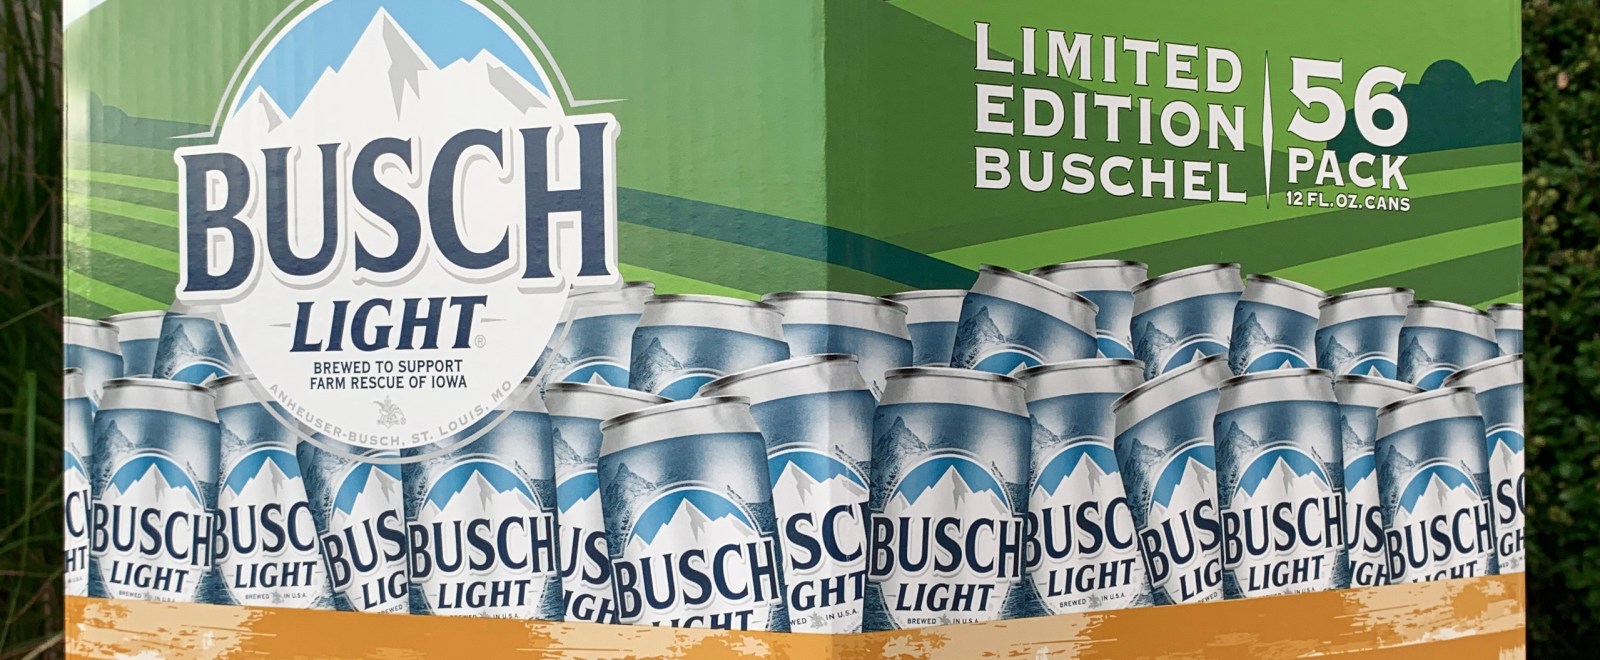 busch light 56 pack